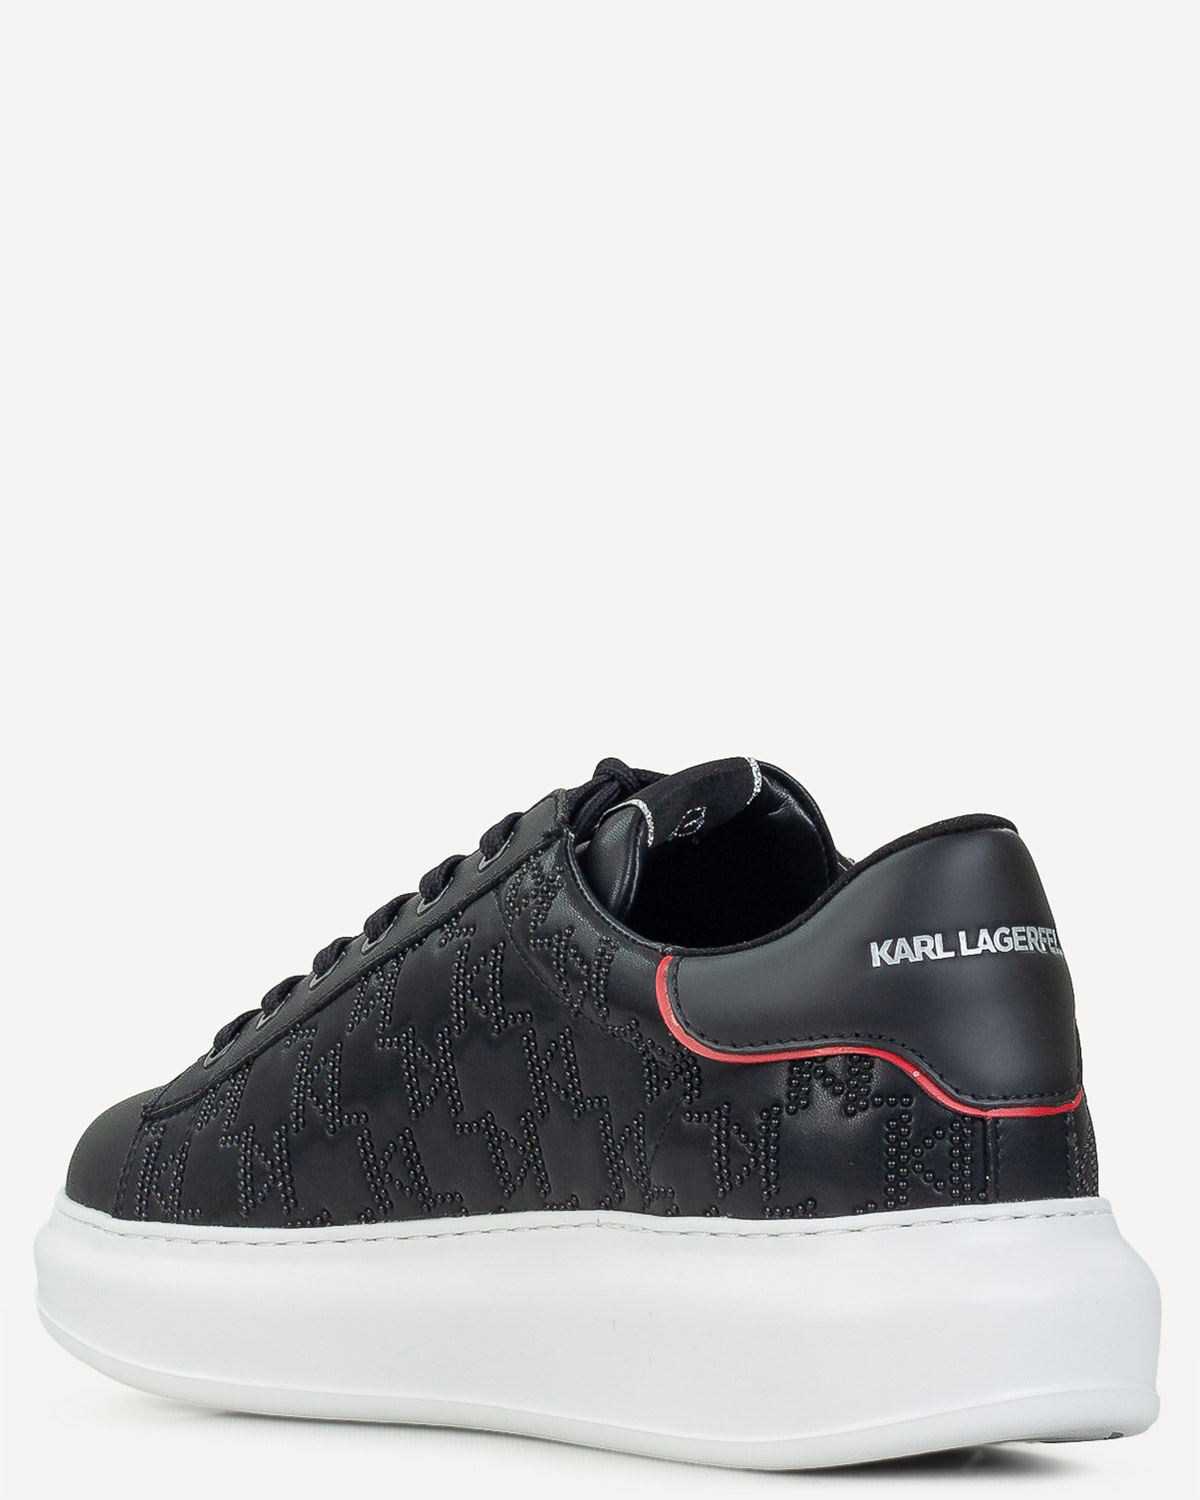 Άνδρας - Sneakers - Karl Lagerfeld Μαύρο